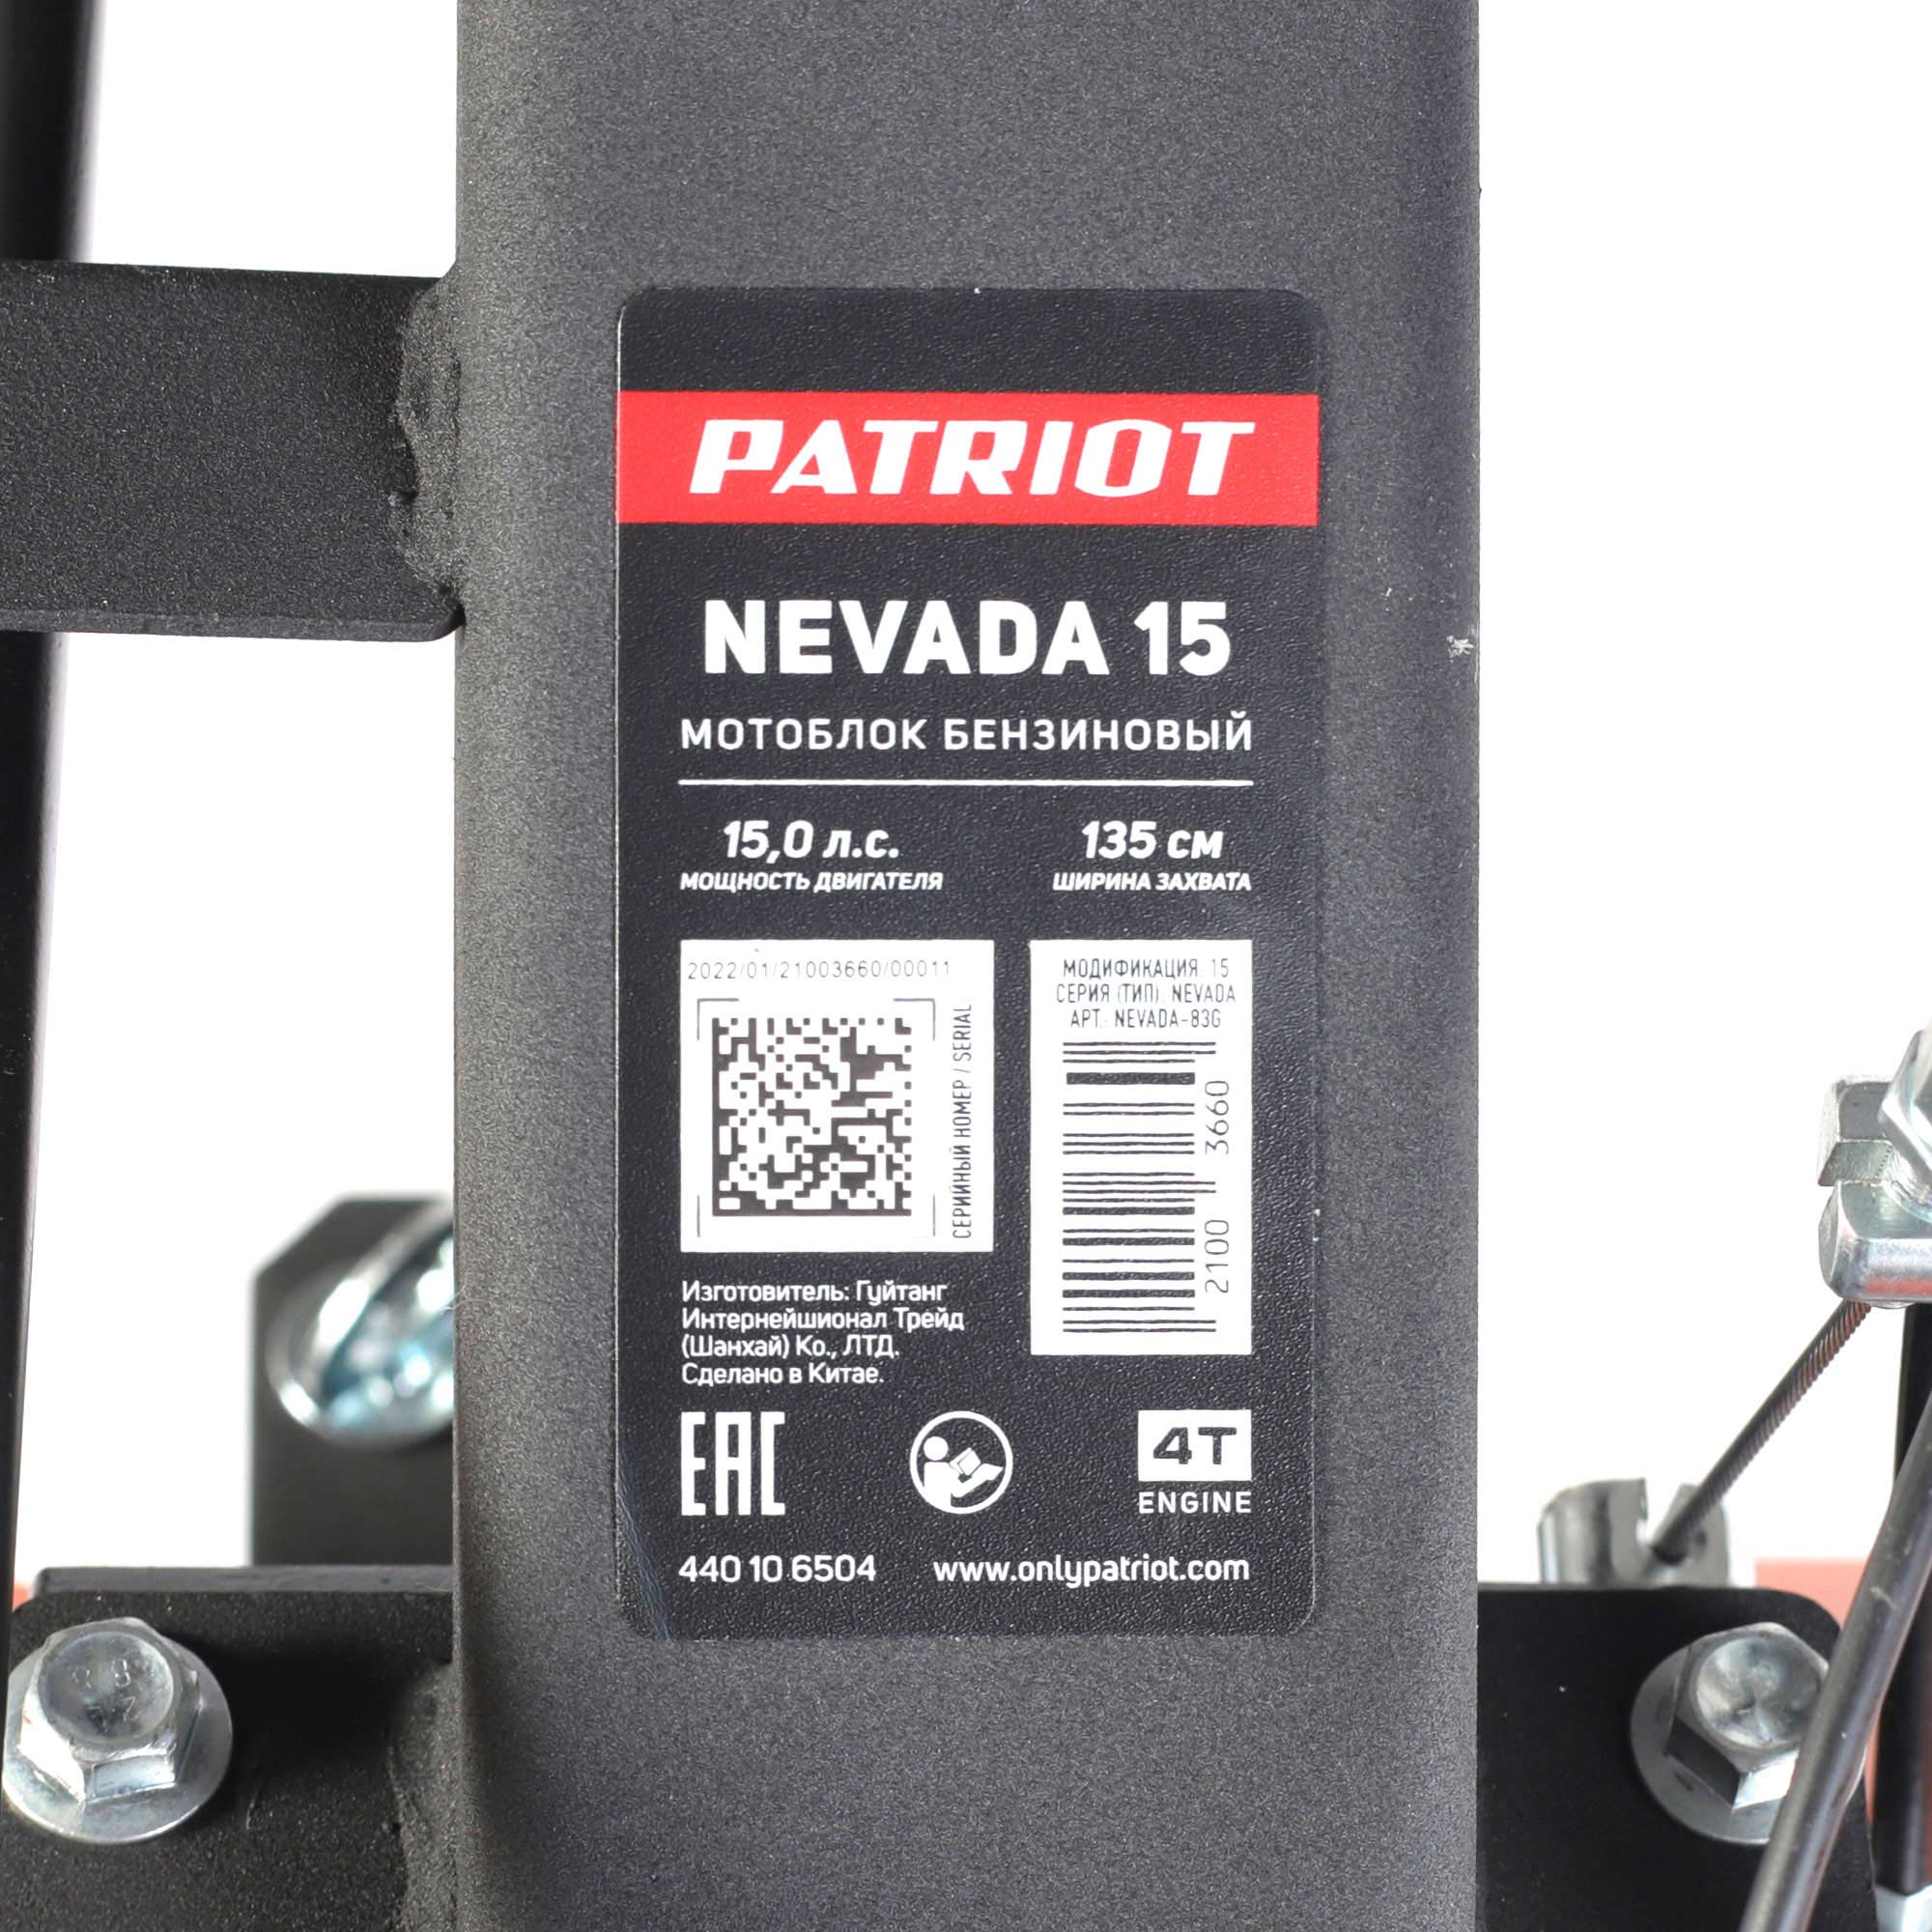  бензиновый Patriot Nevada 15 на официальном сайте.